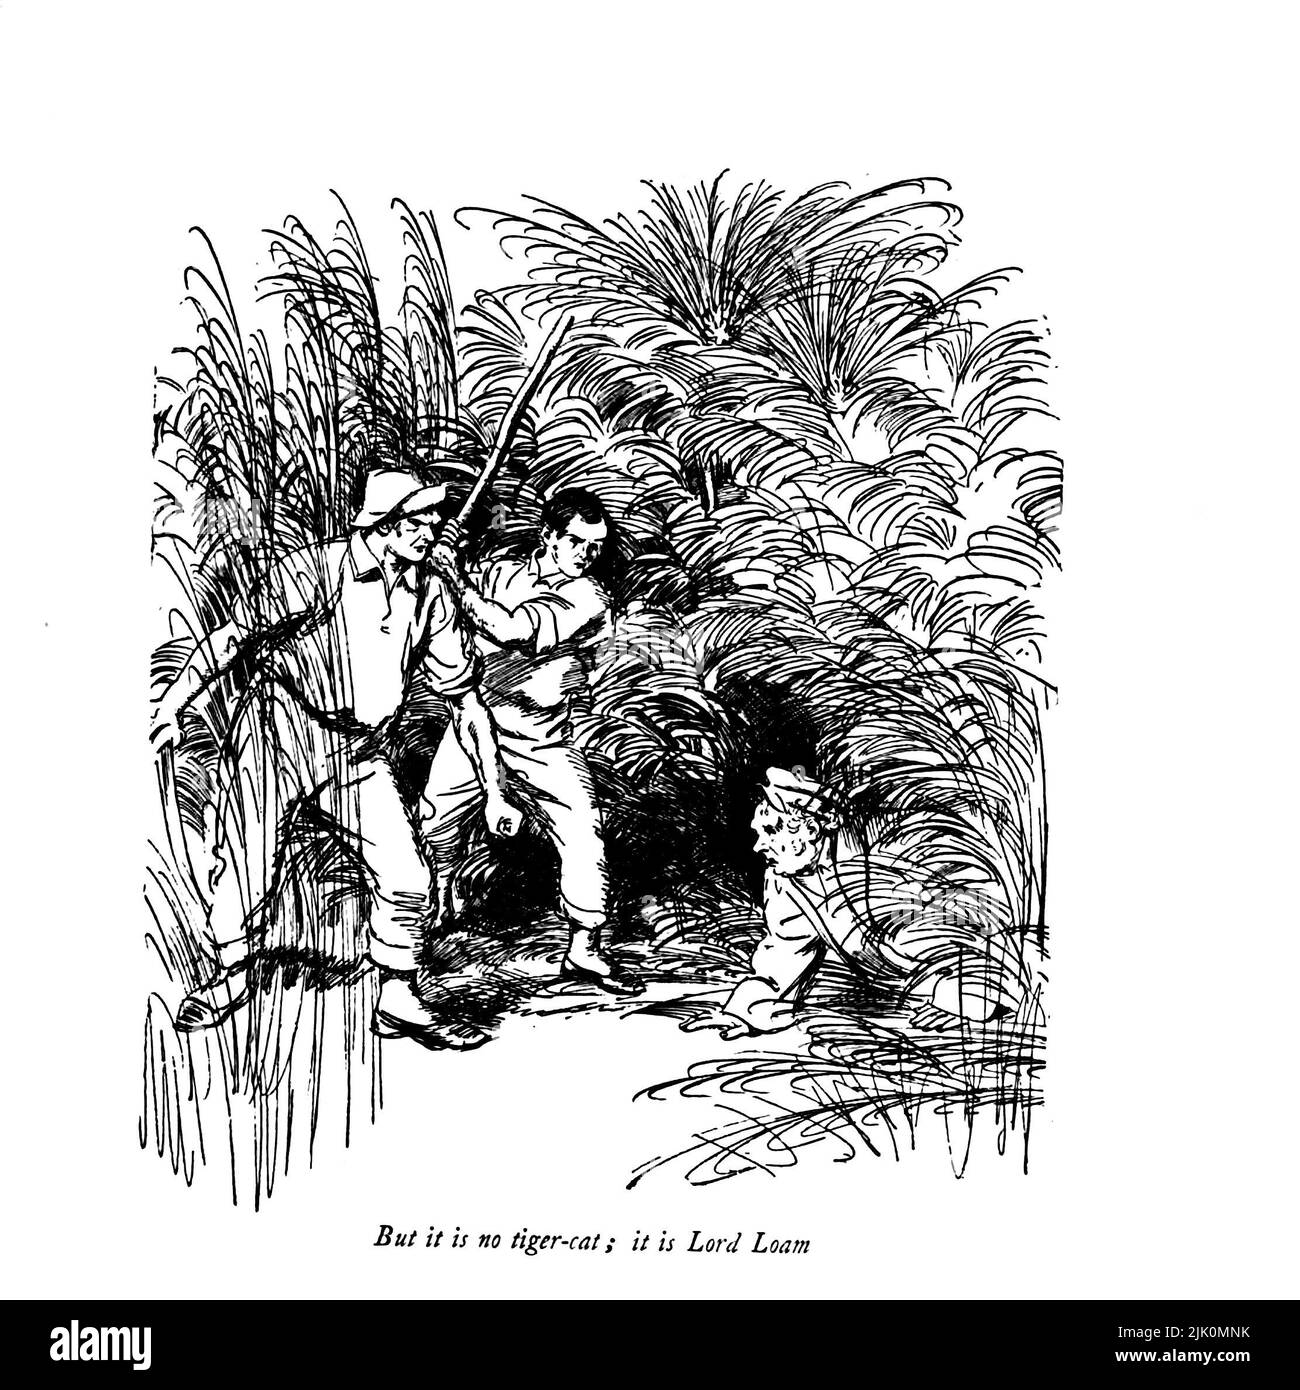 Aber es ist keine Tiger-Katze, es ist Lord Loam der bewunderungswürdige Crichton ist ein Comic-Theaterstück, das 1902 von J. M. Barrie geschrieben wurde. Illustriert von Hugh Thomson RI (1. Juni 1860 – 7. Mai 1920) war ein irischer Illustrator, der in Coleraine bei Derry geboren wurde. Er ist vor allem für seine mit Stift und Tinte illustriert Werke von Autoren wie Jane Austen, Charles Dickens und J. M. Barrie bekannt. Veröffentlicht 1914 London, Hodder & Stoughton Stockfoto